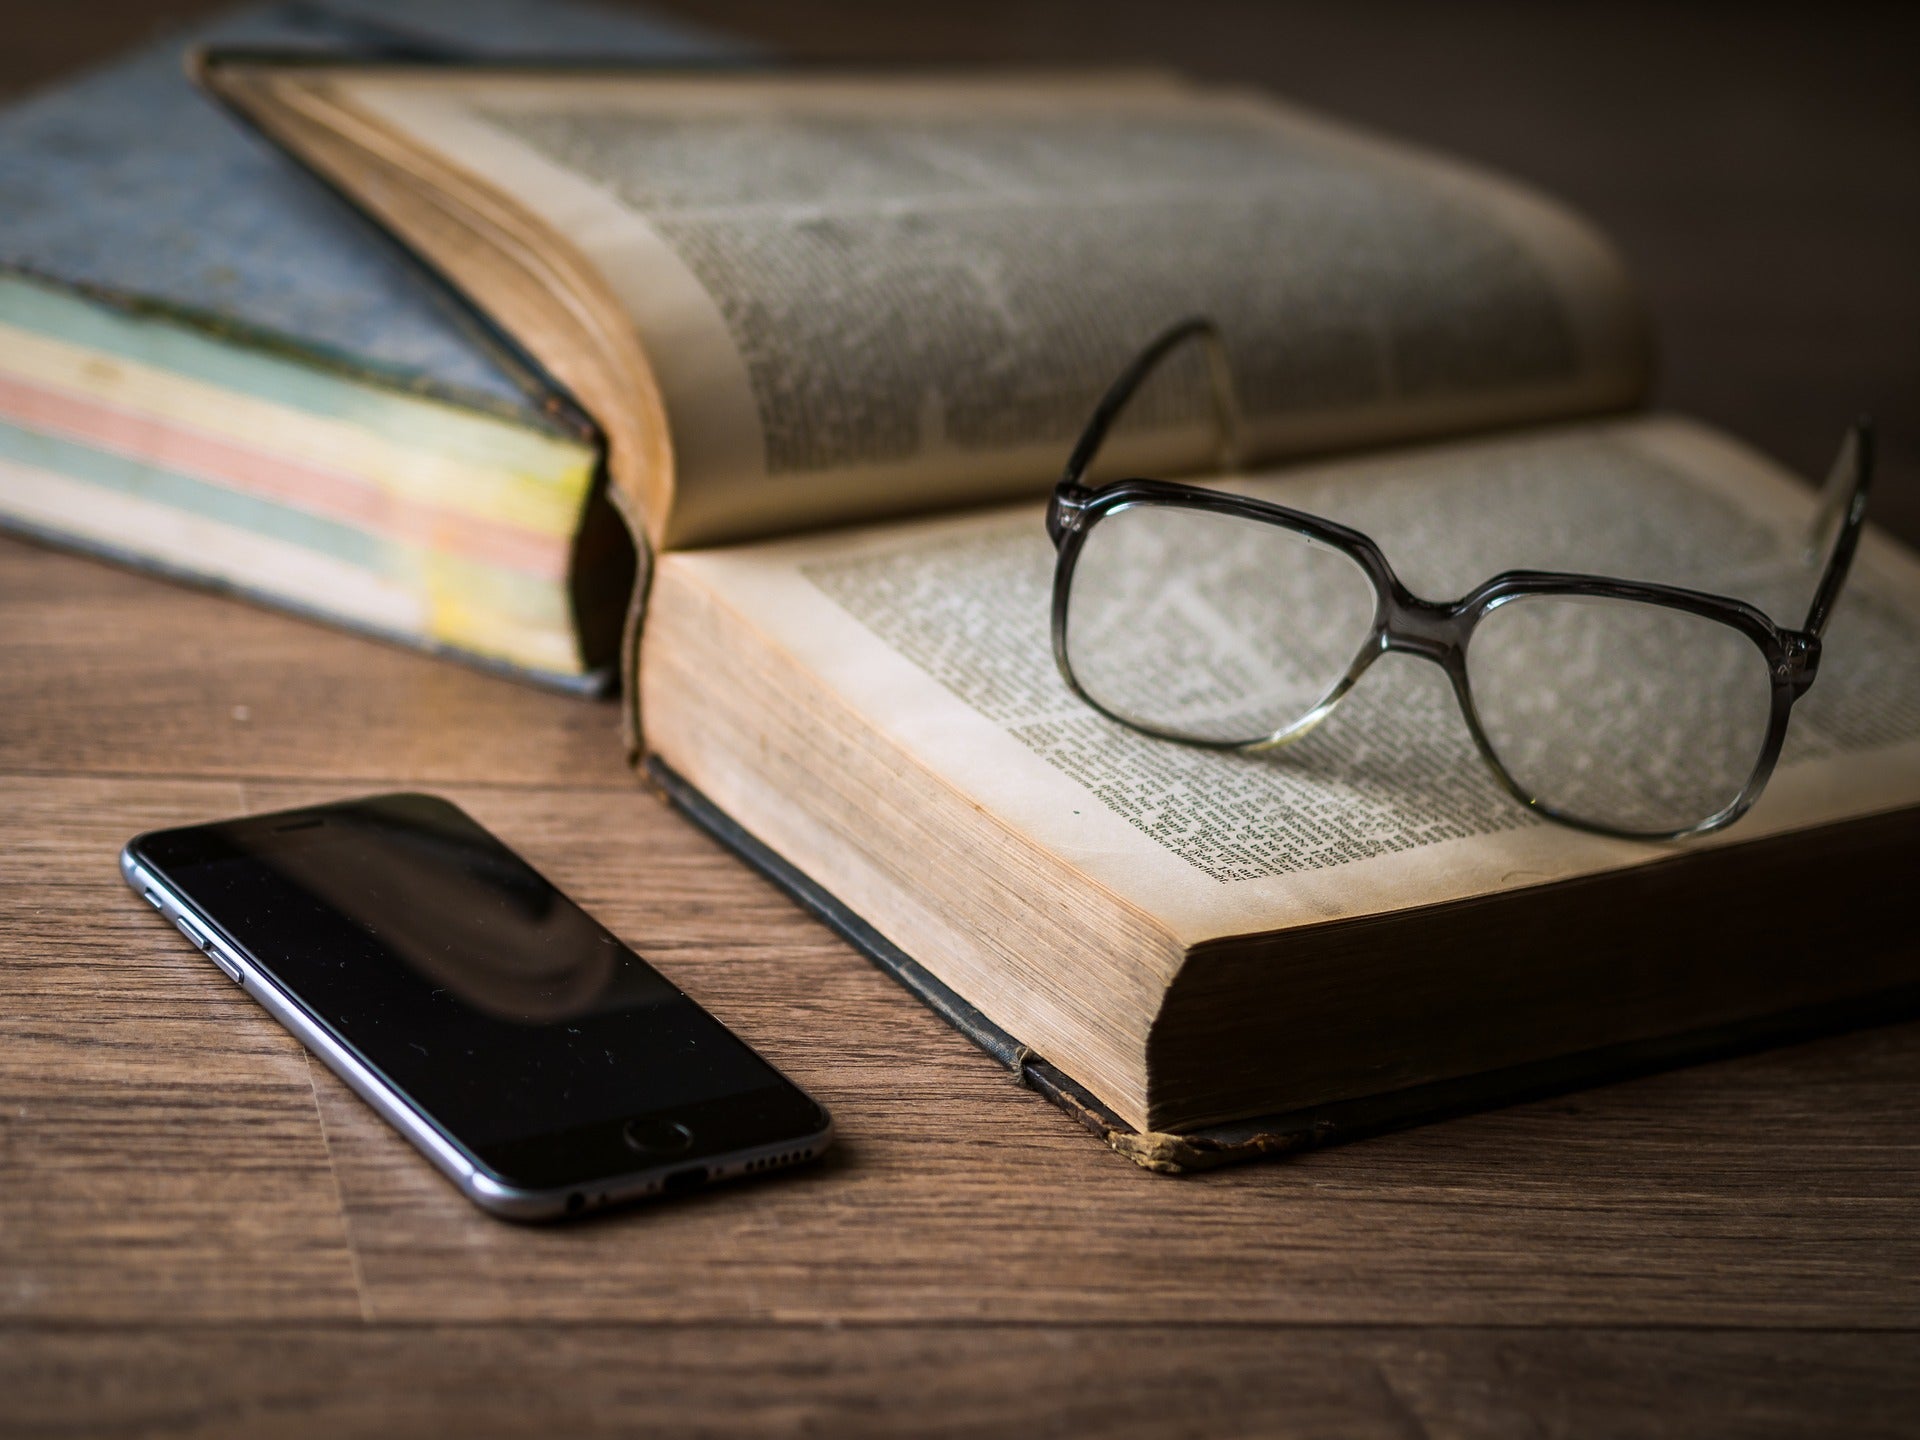 A cellphone next to an open book